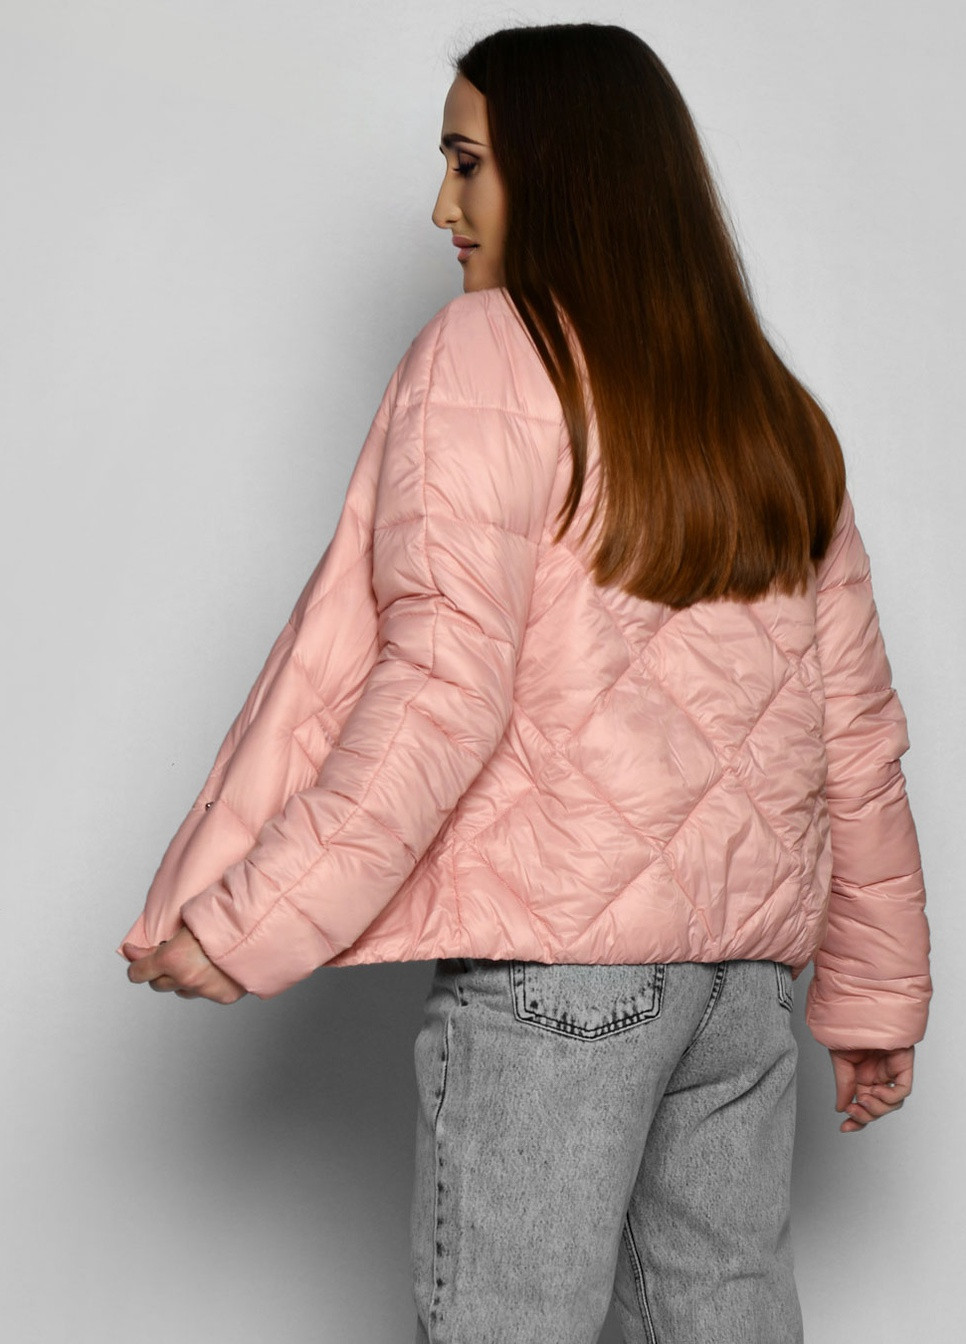 Розовая демисезонная легкая демисезонная куртка на кнопках X-Woyz